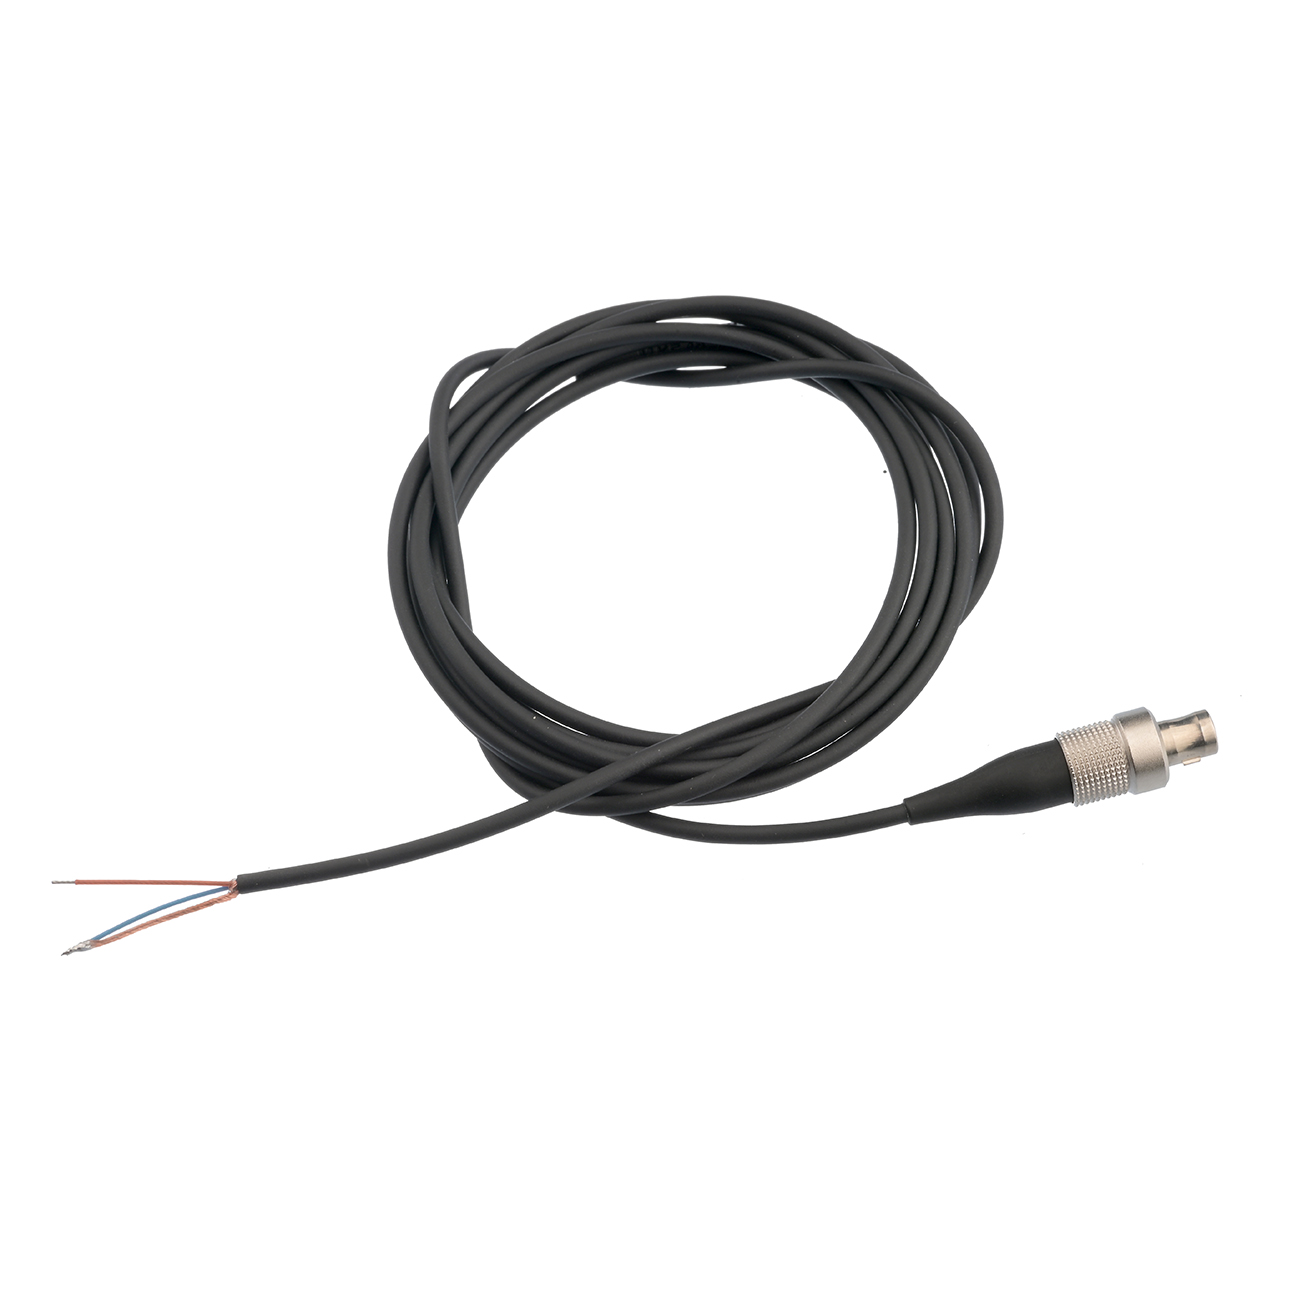 Cable with Lemo plug